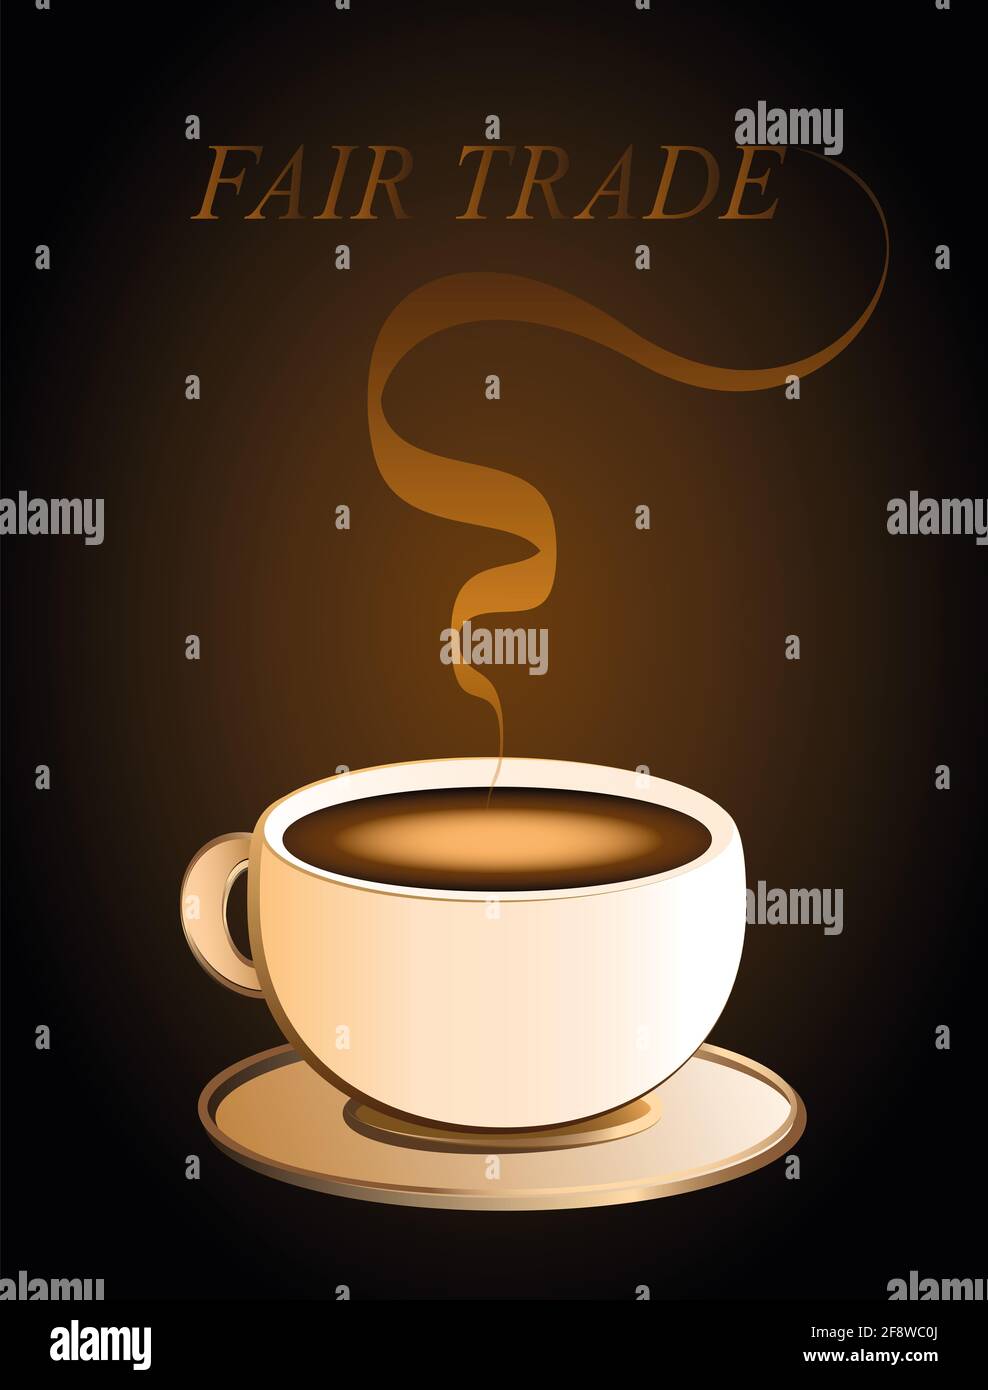 Café issu du commerce équitable avec arôme et texte sur LE COMMERCE ÉQUITABLE - illustration sur fond marron. Banque D'Images